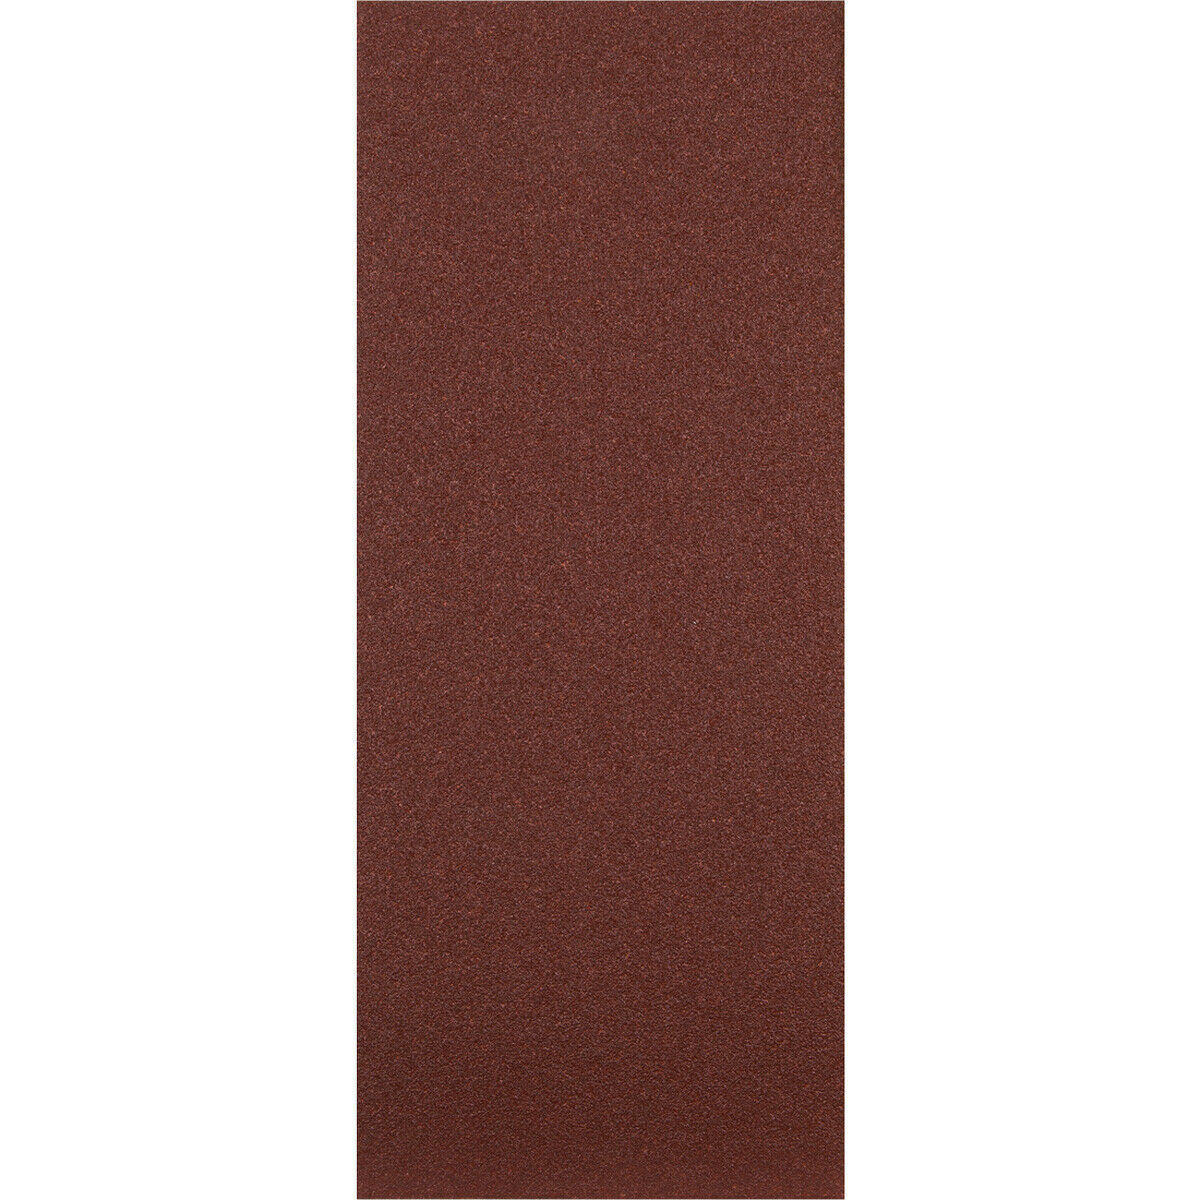 5 PACK Orbital Sanding Sheet - 115 x 280mm - 80 Grit - Wood Metal Sanding Paper